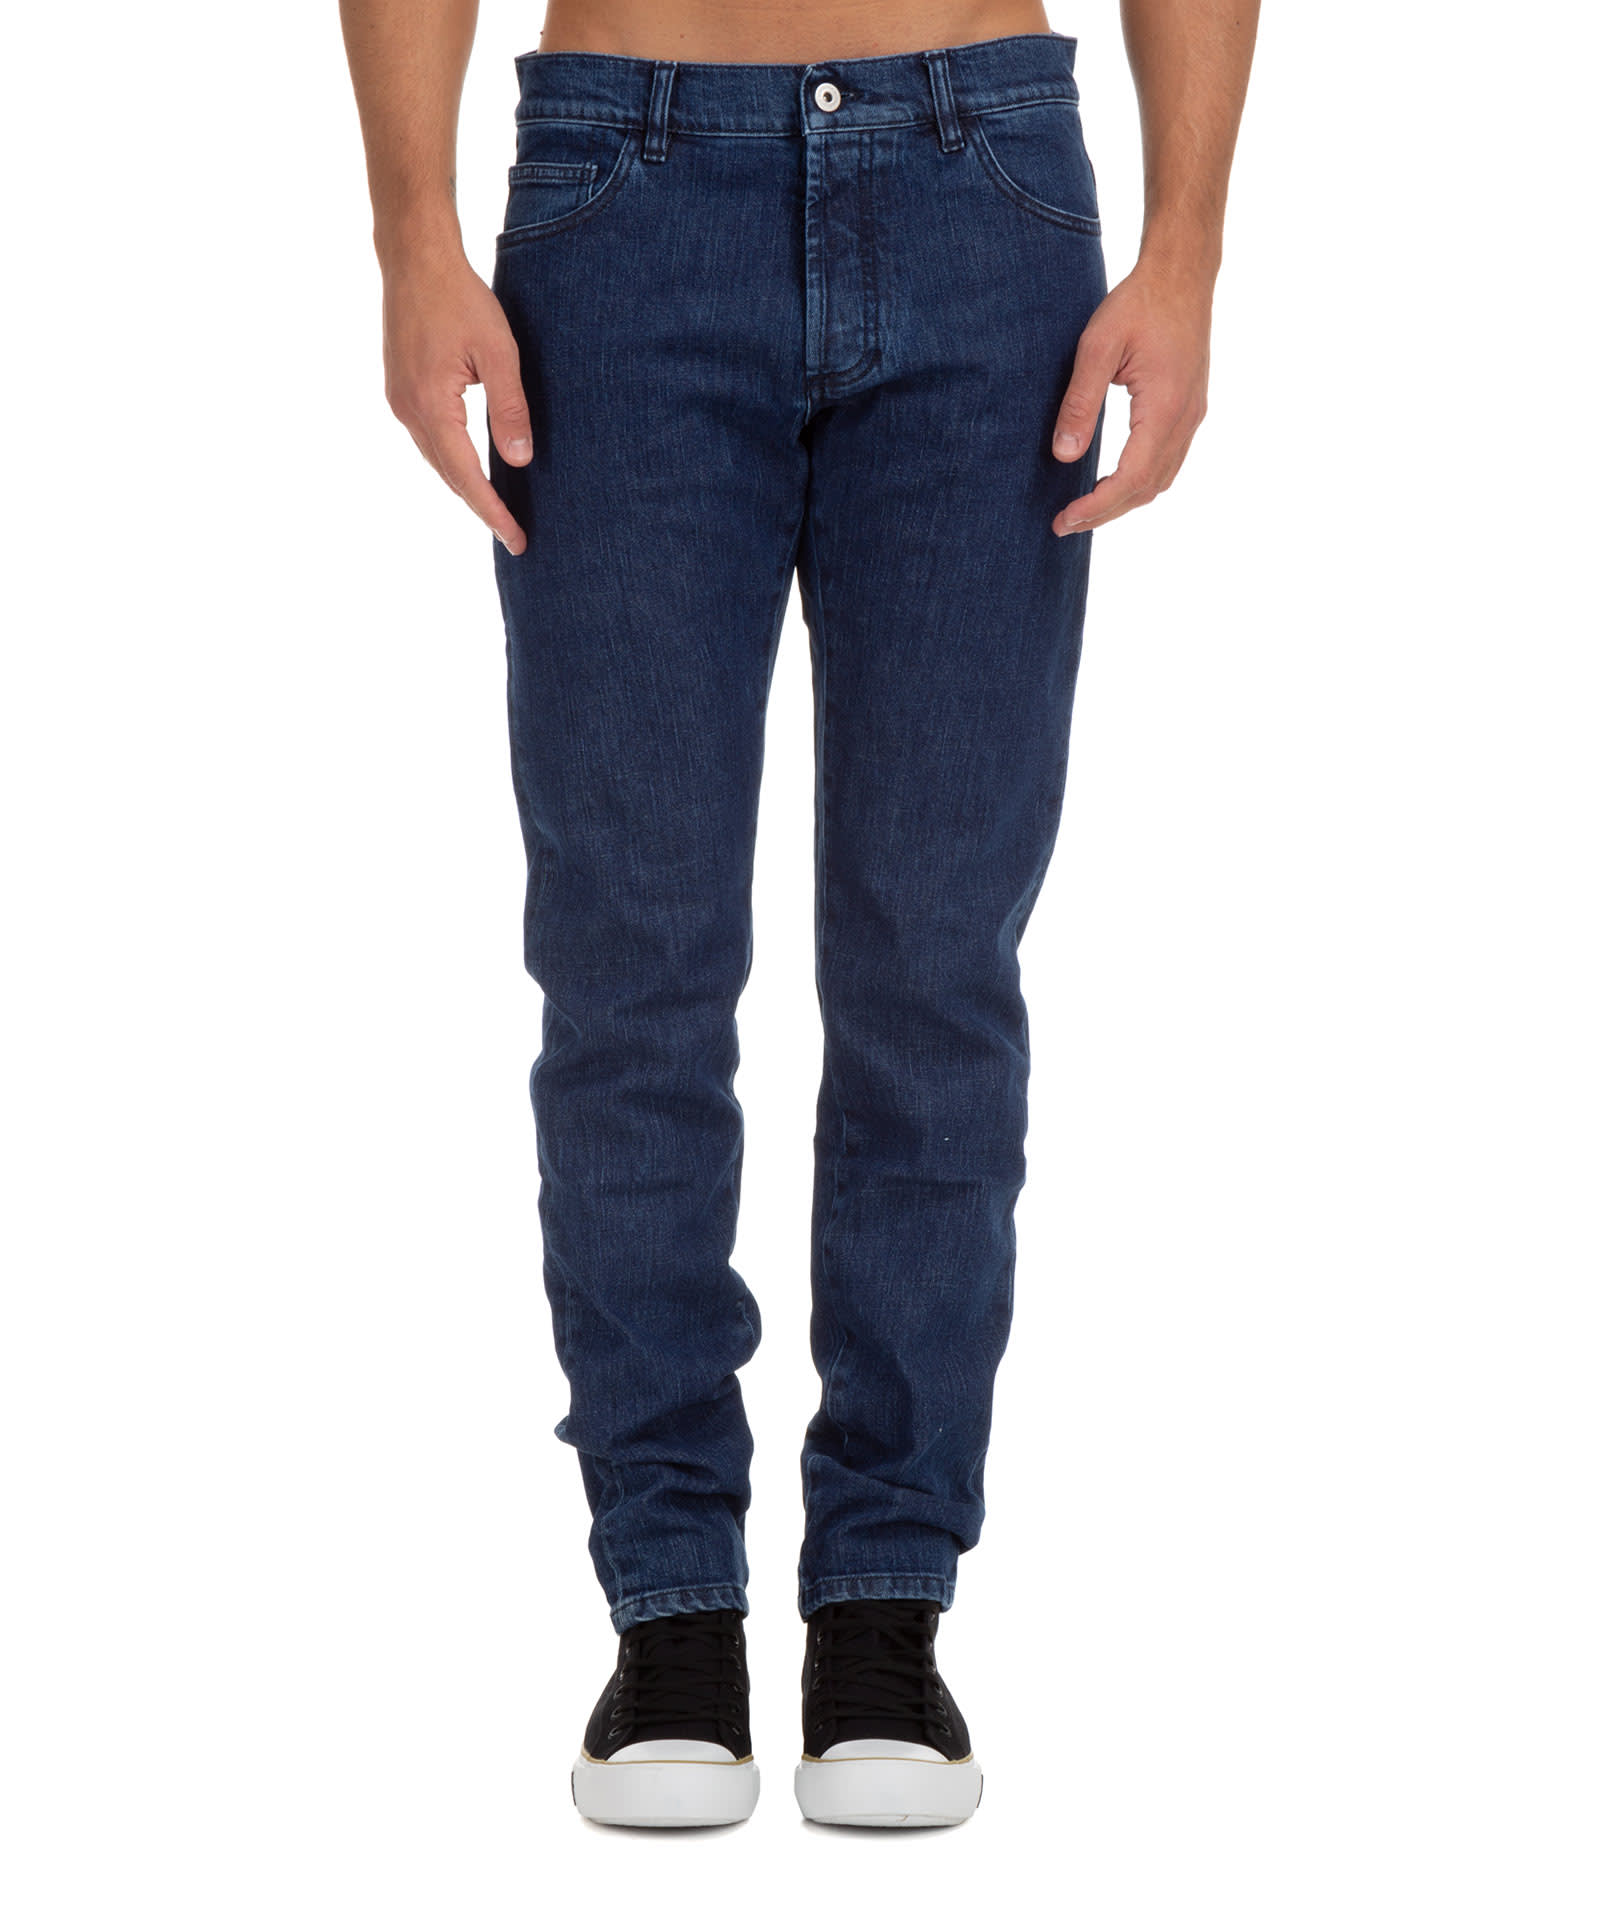 Marcelo Burlon Cross Cotton Jeans